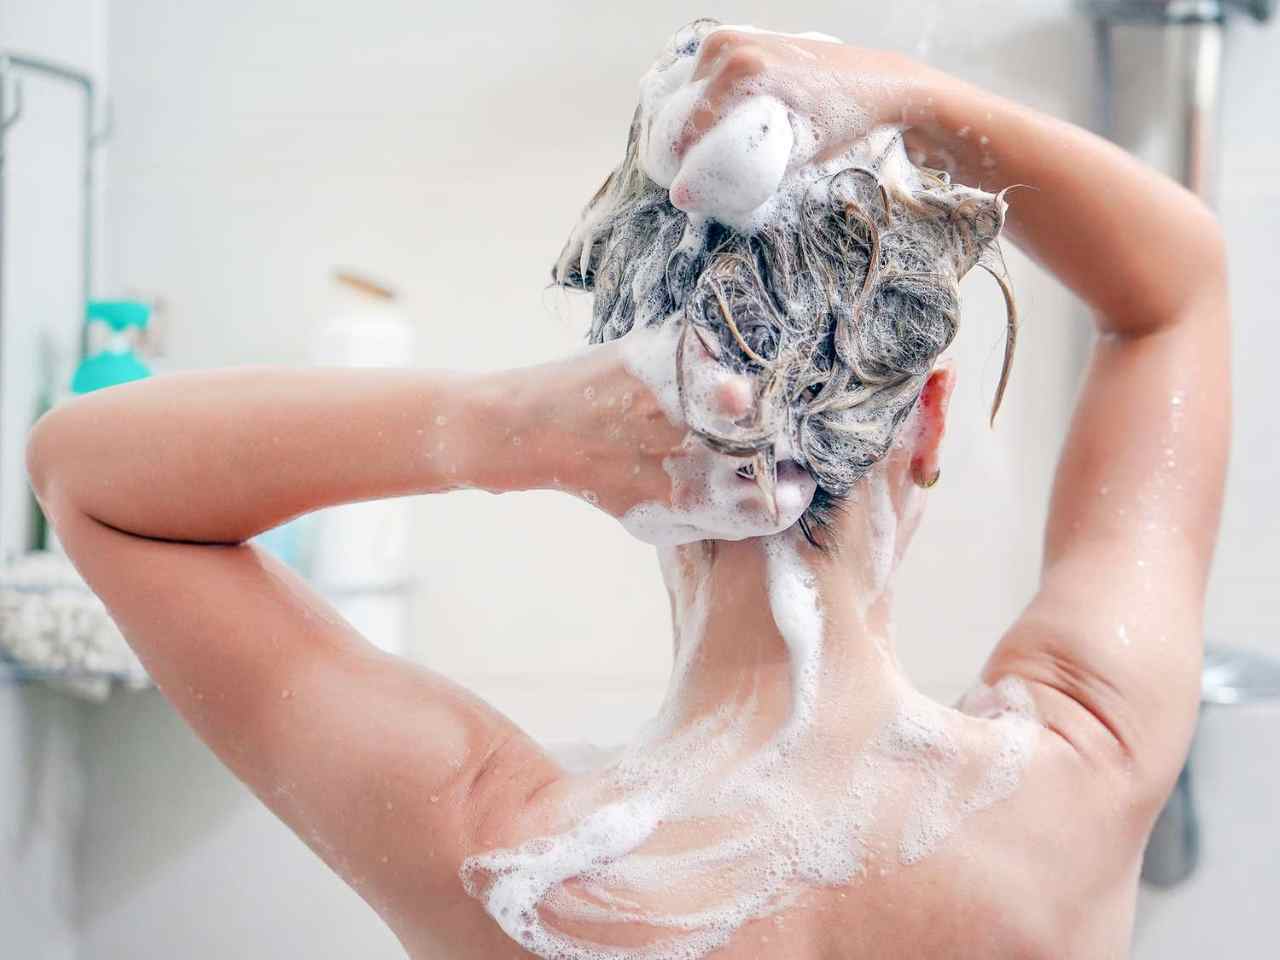 Fare lo shampoo tutti i giorni fa male